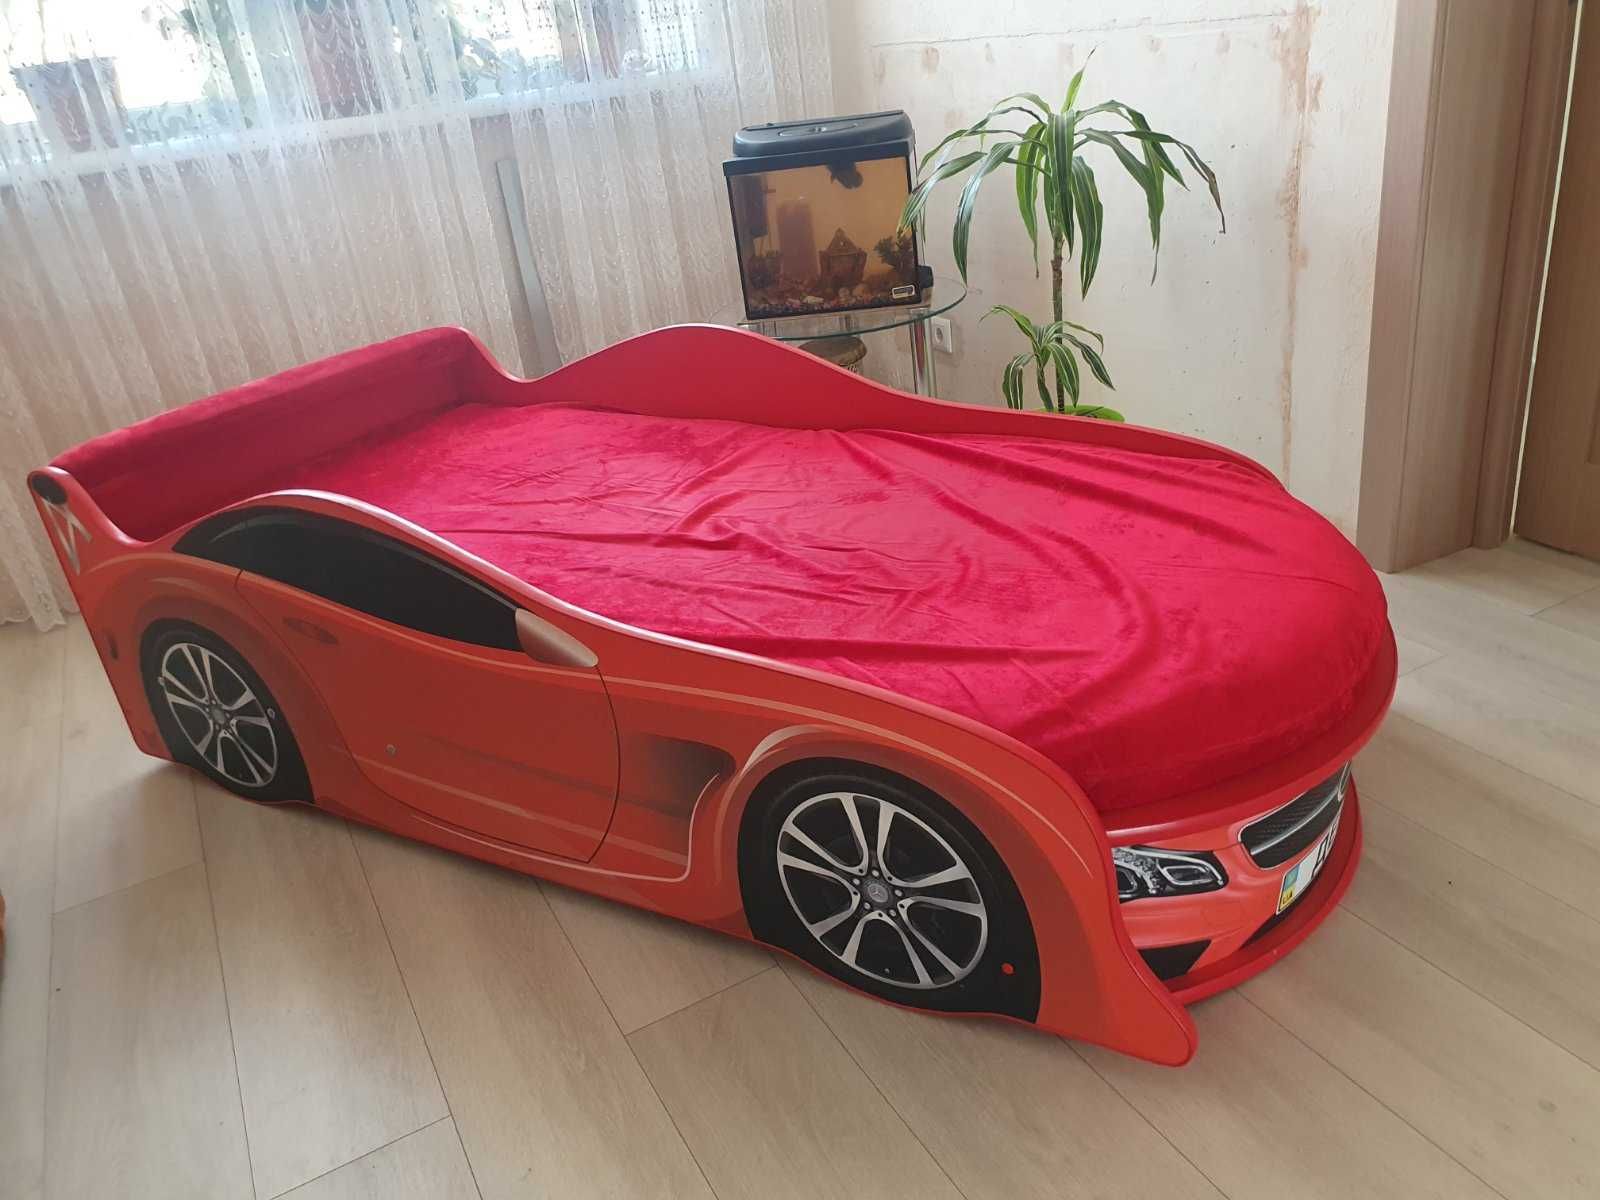 Дитяче ліжко-машина червоний Mersedes, 80×190, відмінний стан.